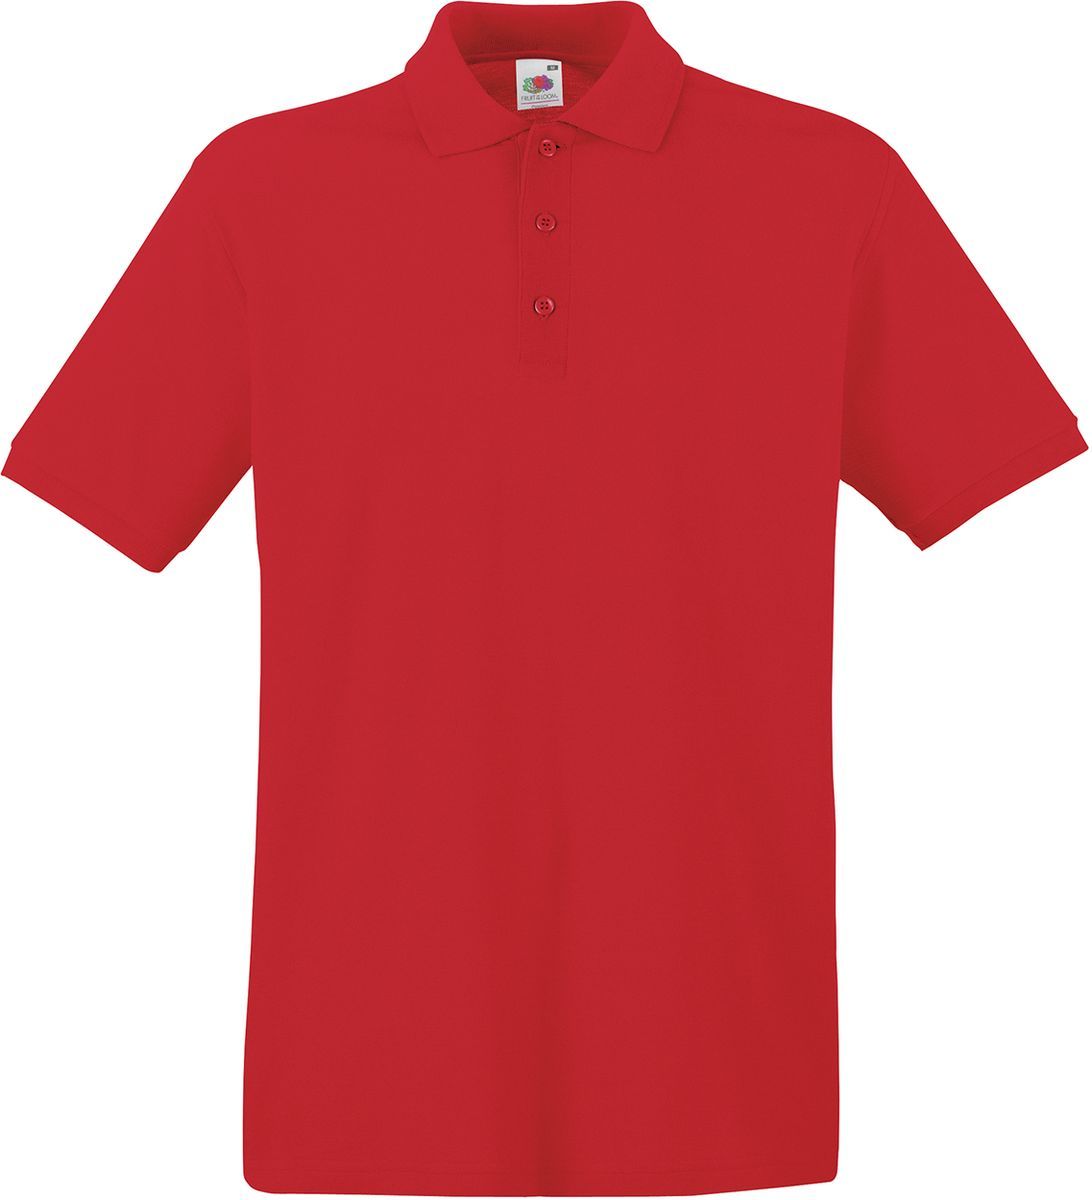 Ανδρική μπλούζα Polo Fruit of the Loom 63-218-0 Red